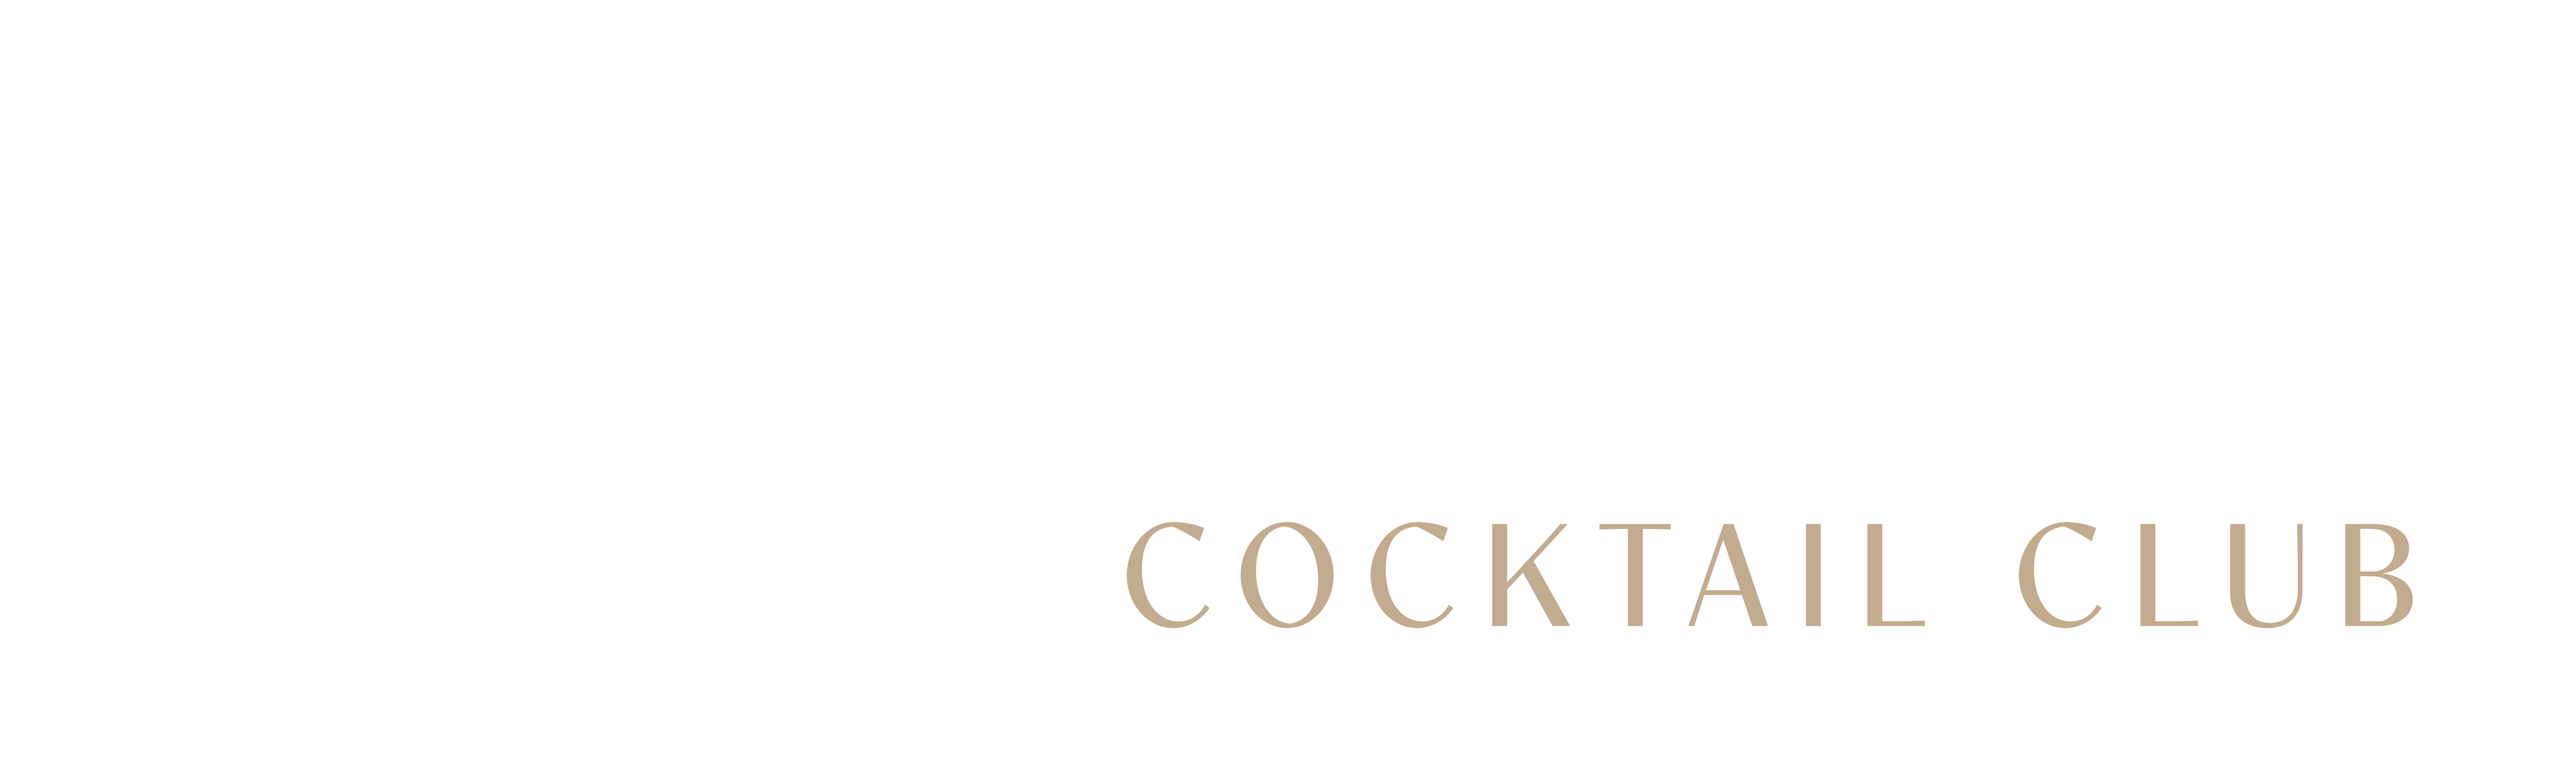 One More | Cocktail Club - vendor logo